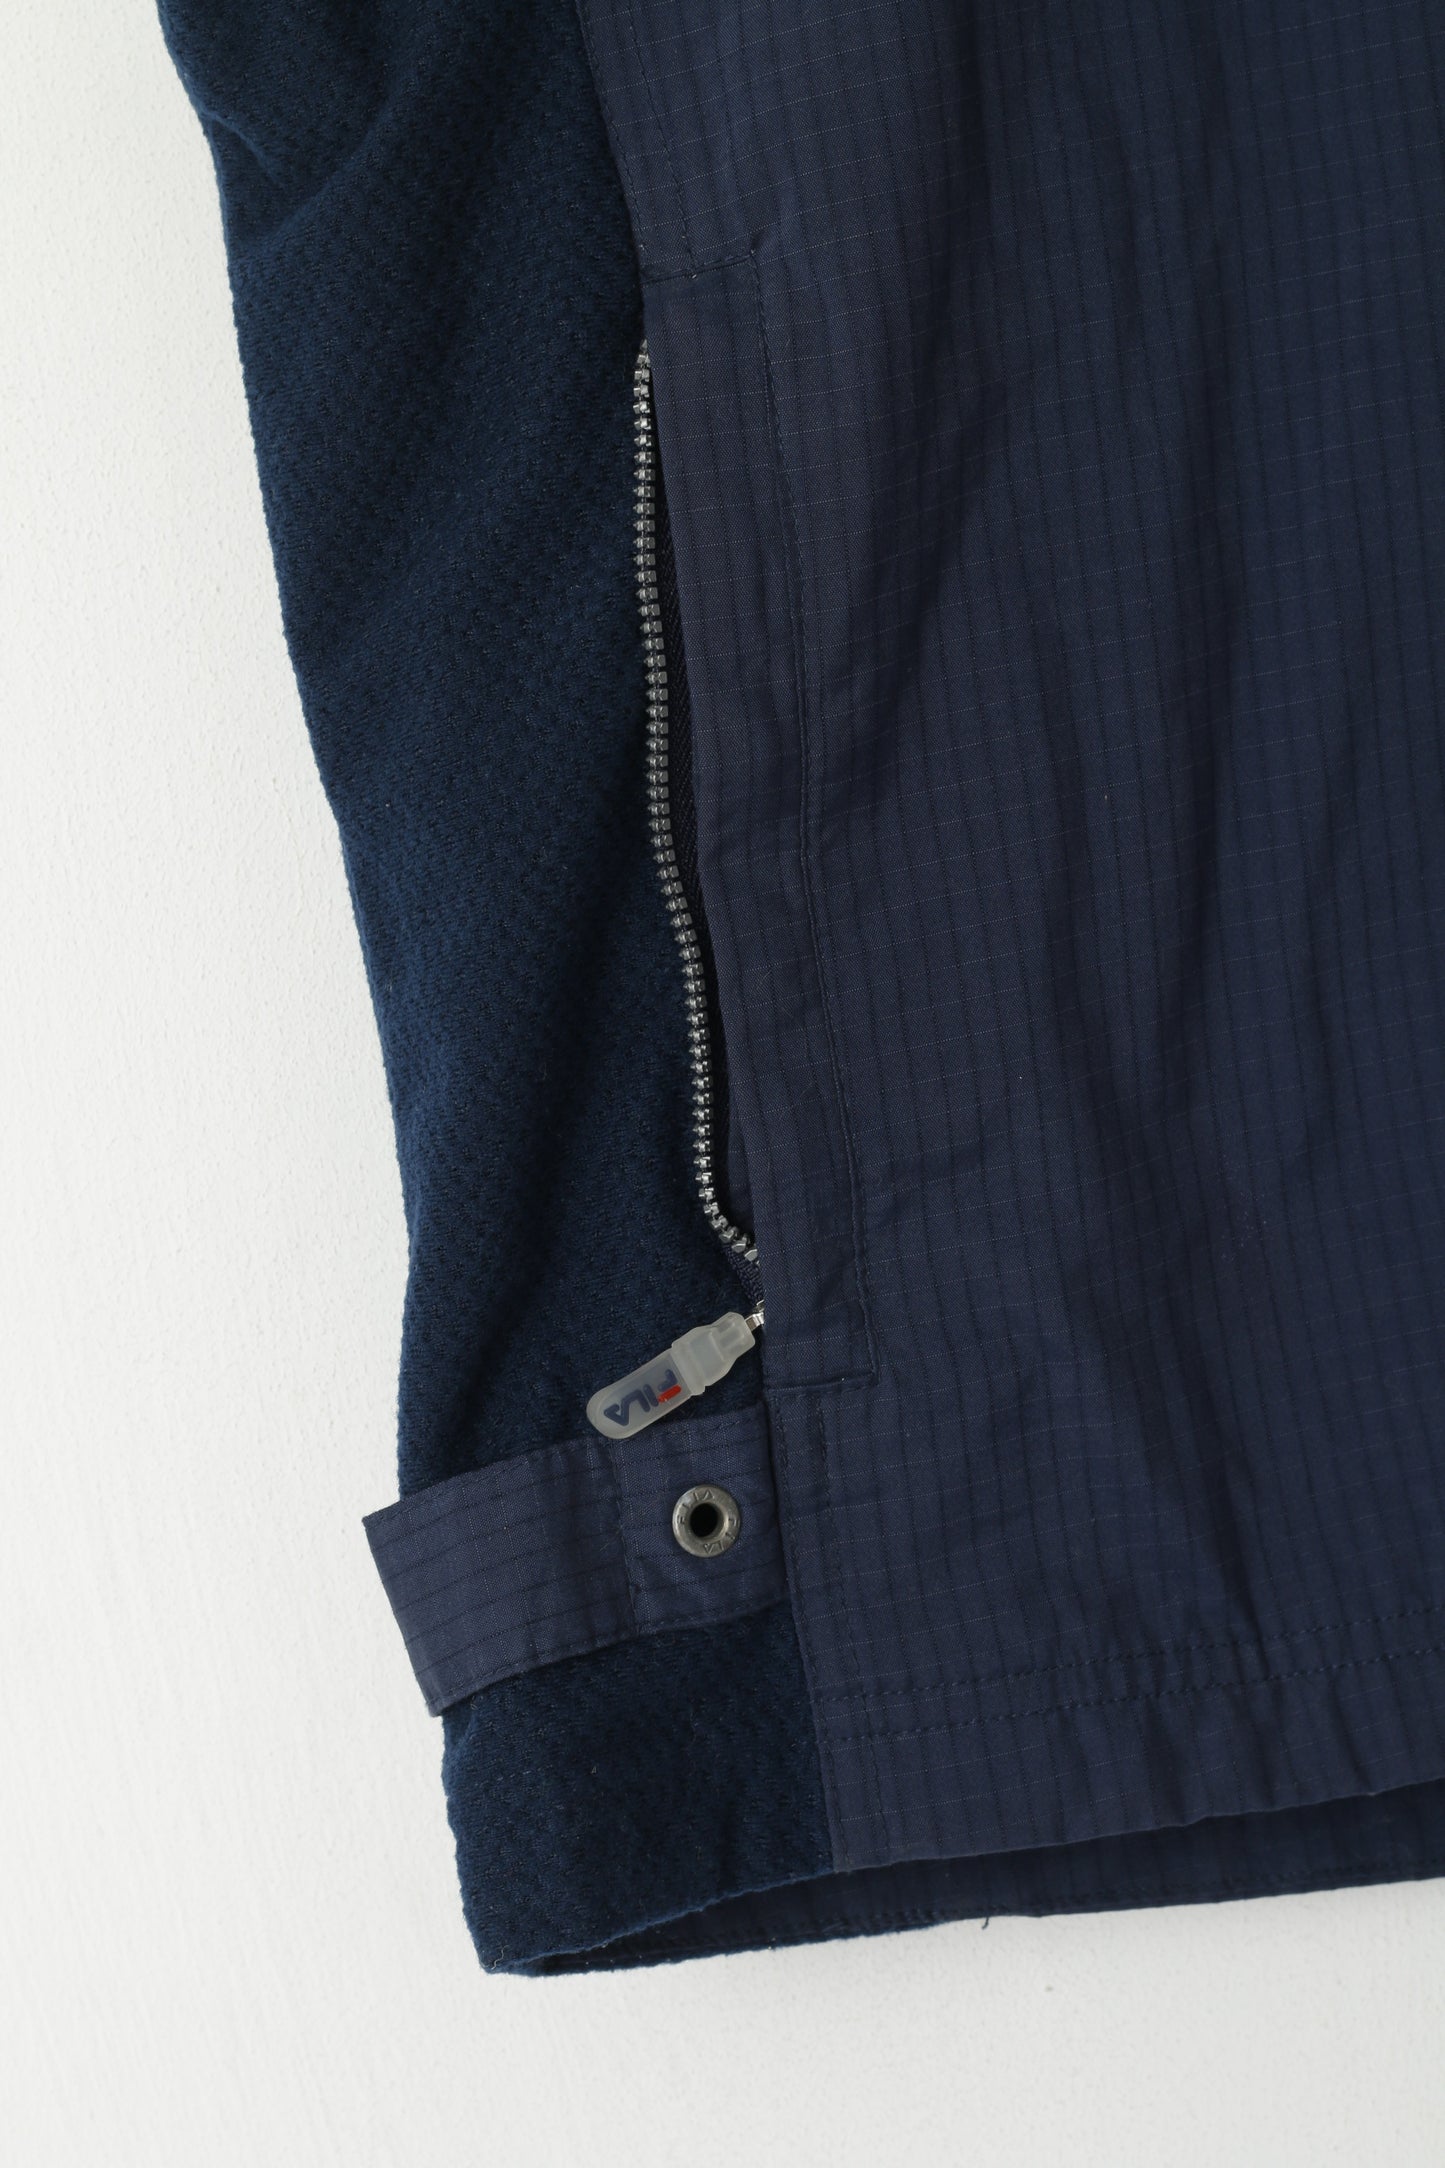 Fila Men S Waistcoat Navy Sport Zip Up Nylon Vest Outdoor Sleeveless Top